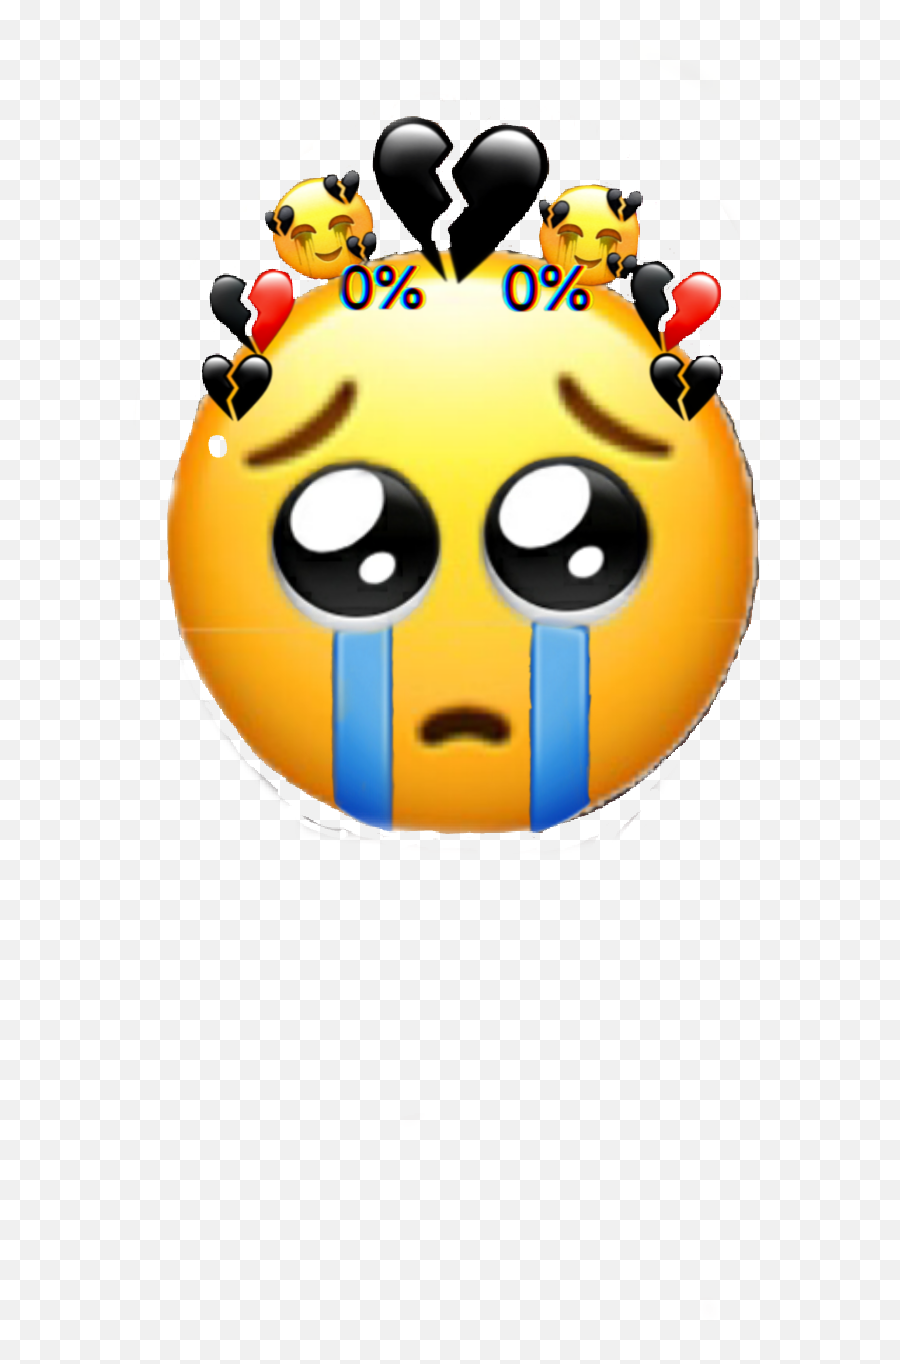 Popular And Trending Llorando Stickers On Picsart - Cute Sad Cries Emoji,Emoji Llorando